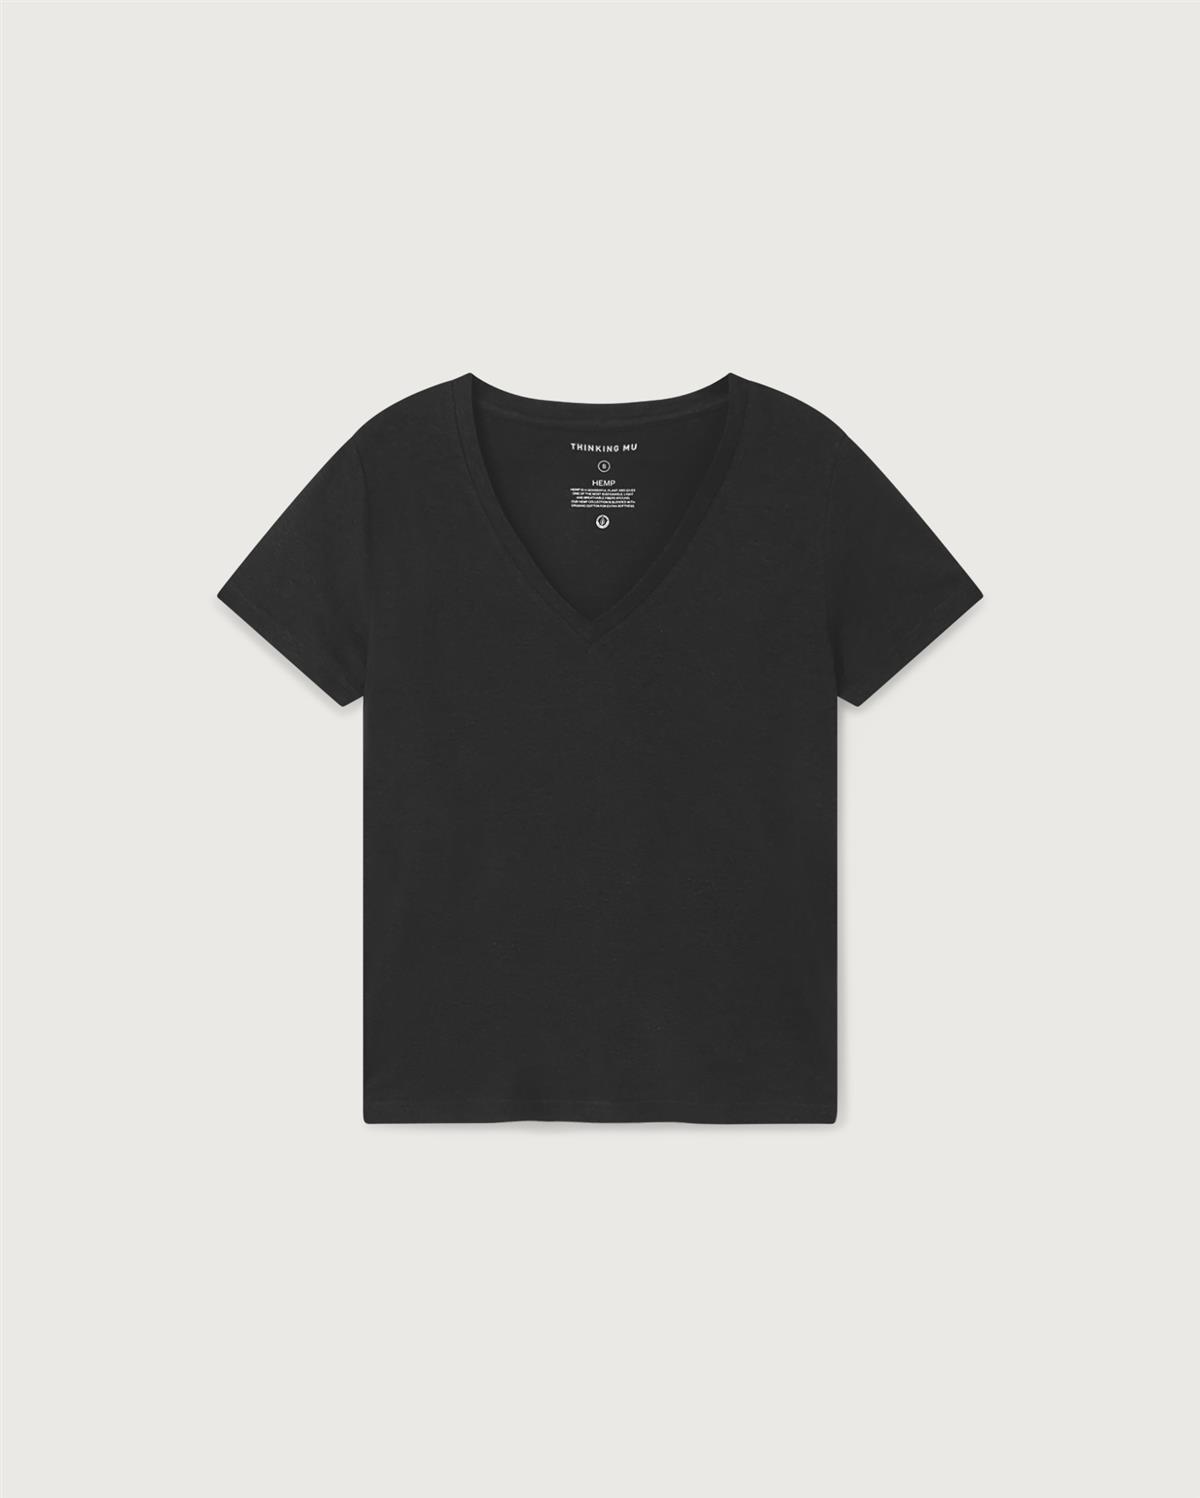 T-Shirt Modell: Hemp Clavel